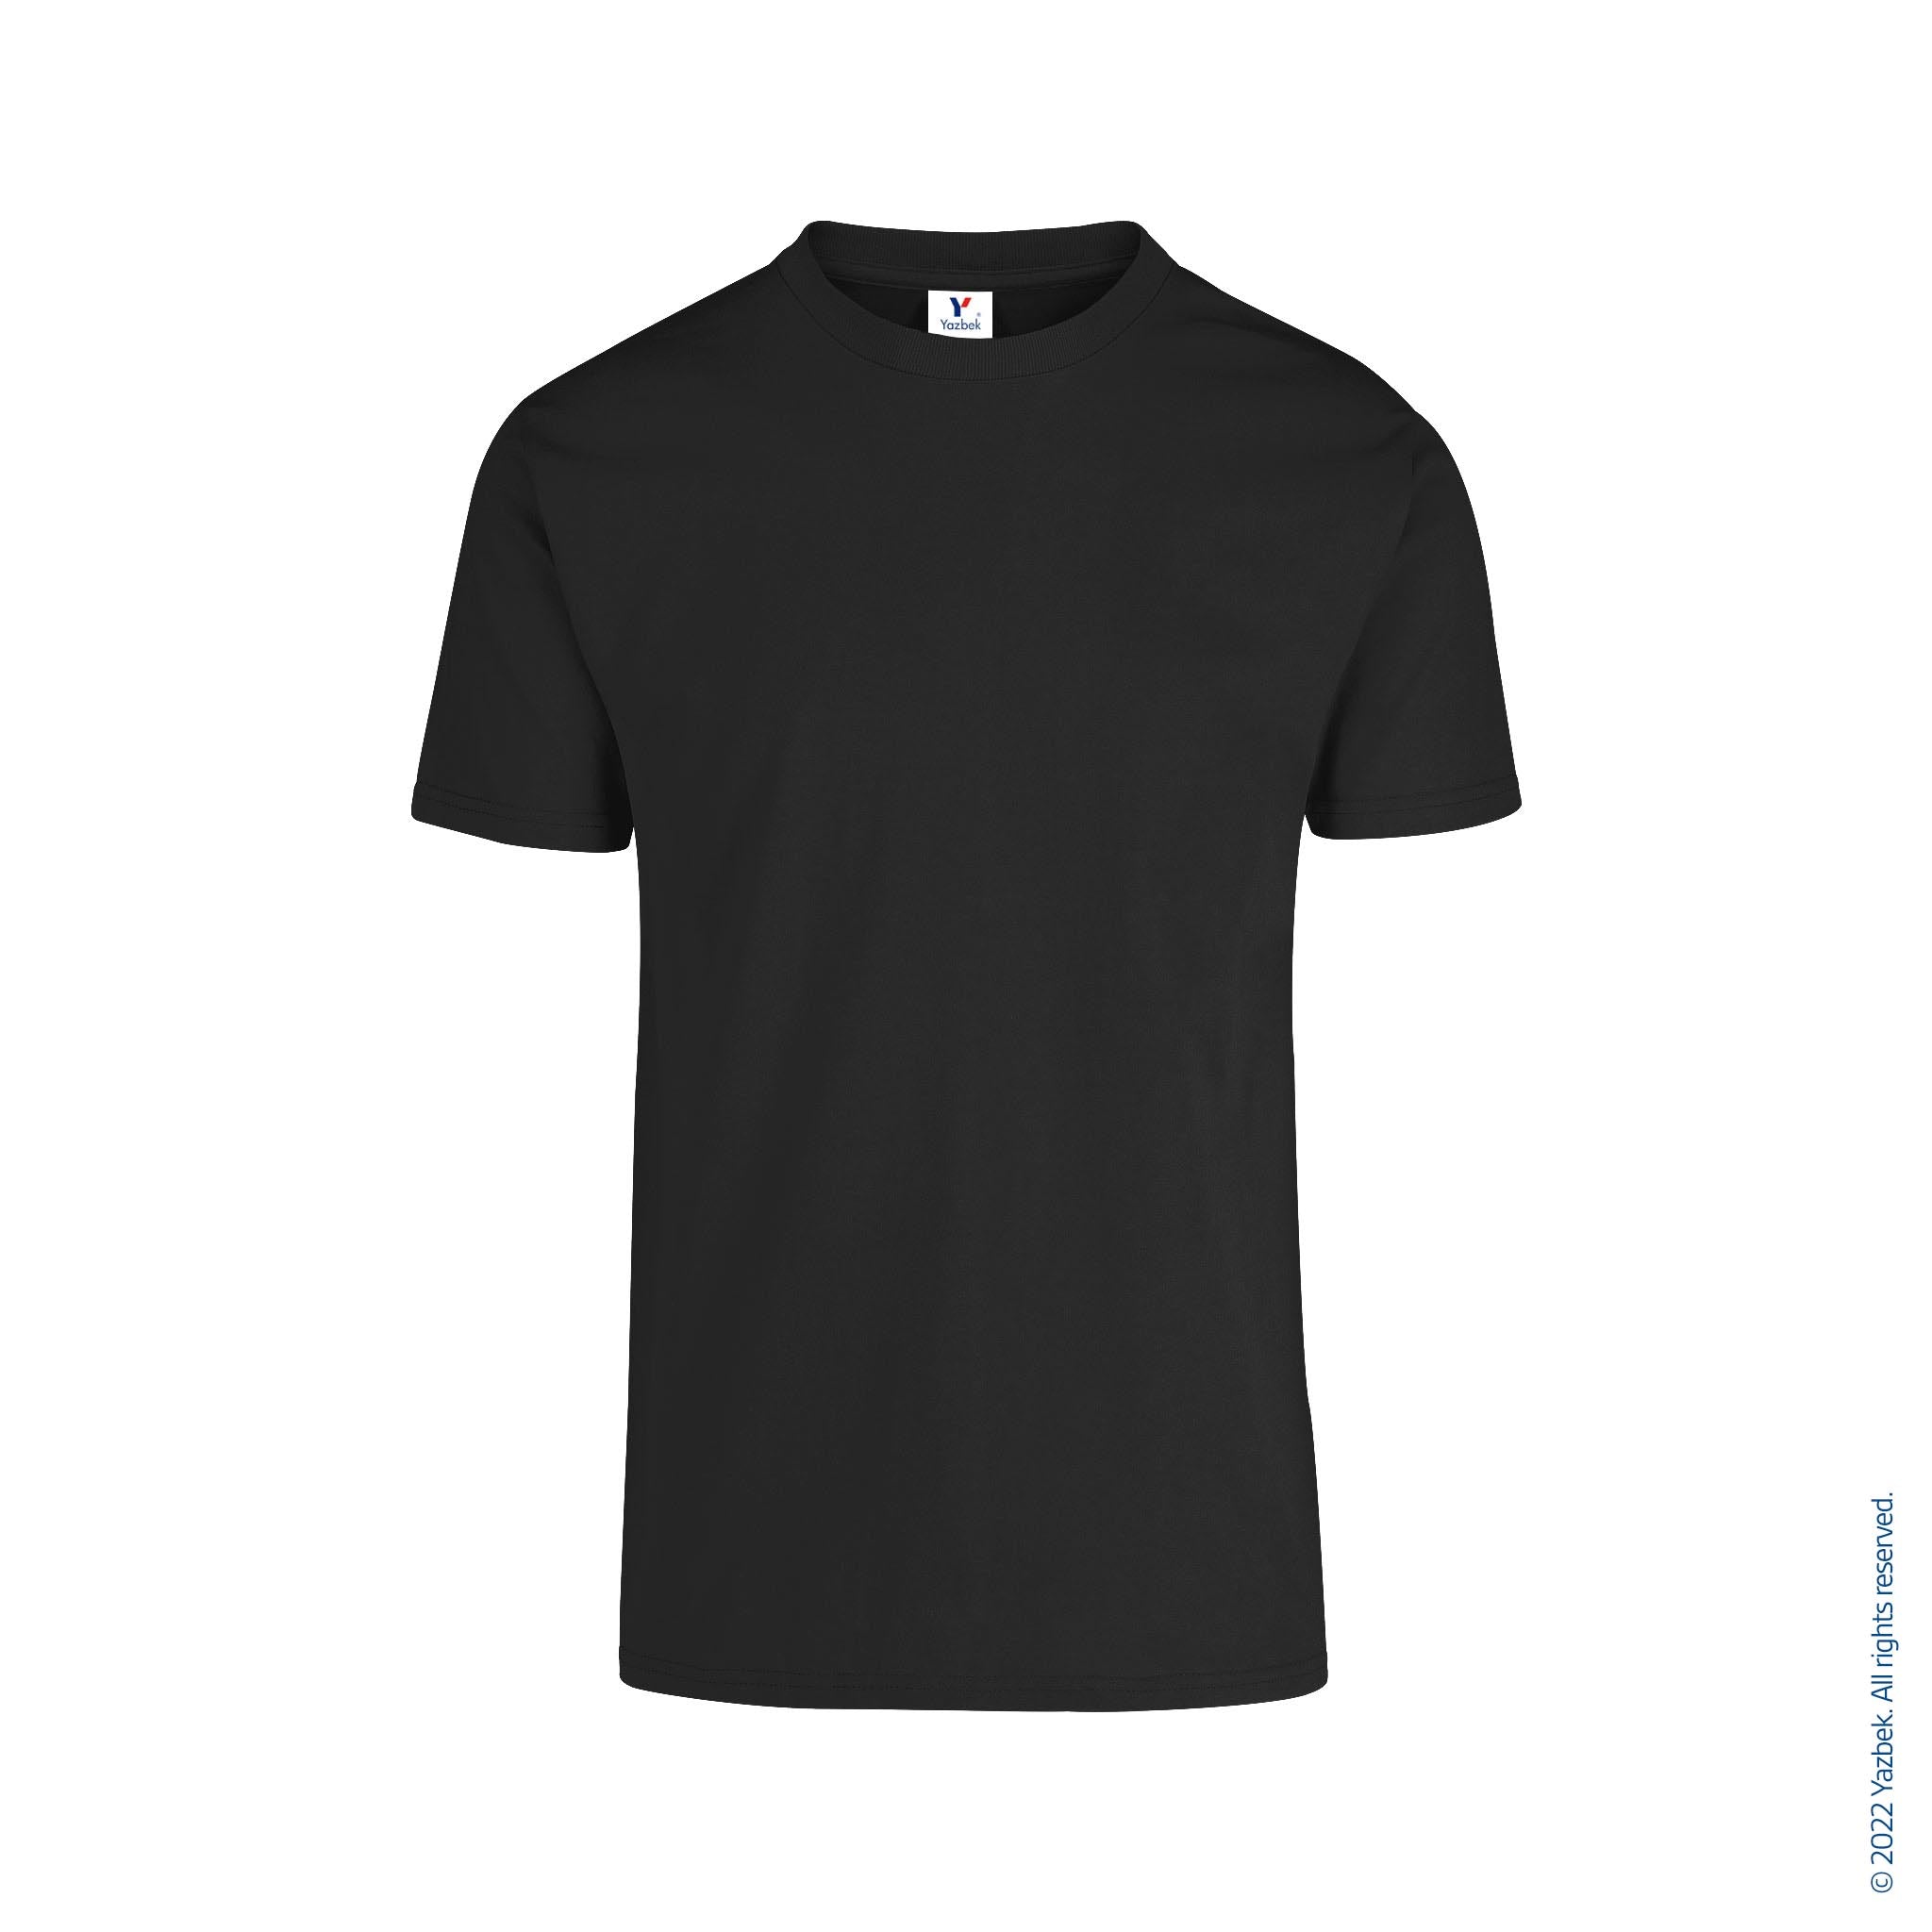  Bravos de Juarez T-Shirt 100% Cotton White,Black Crew Neck  (Black, S) : Clothing, Shoes & Jewelry